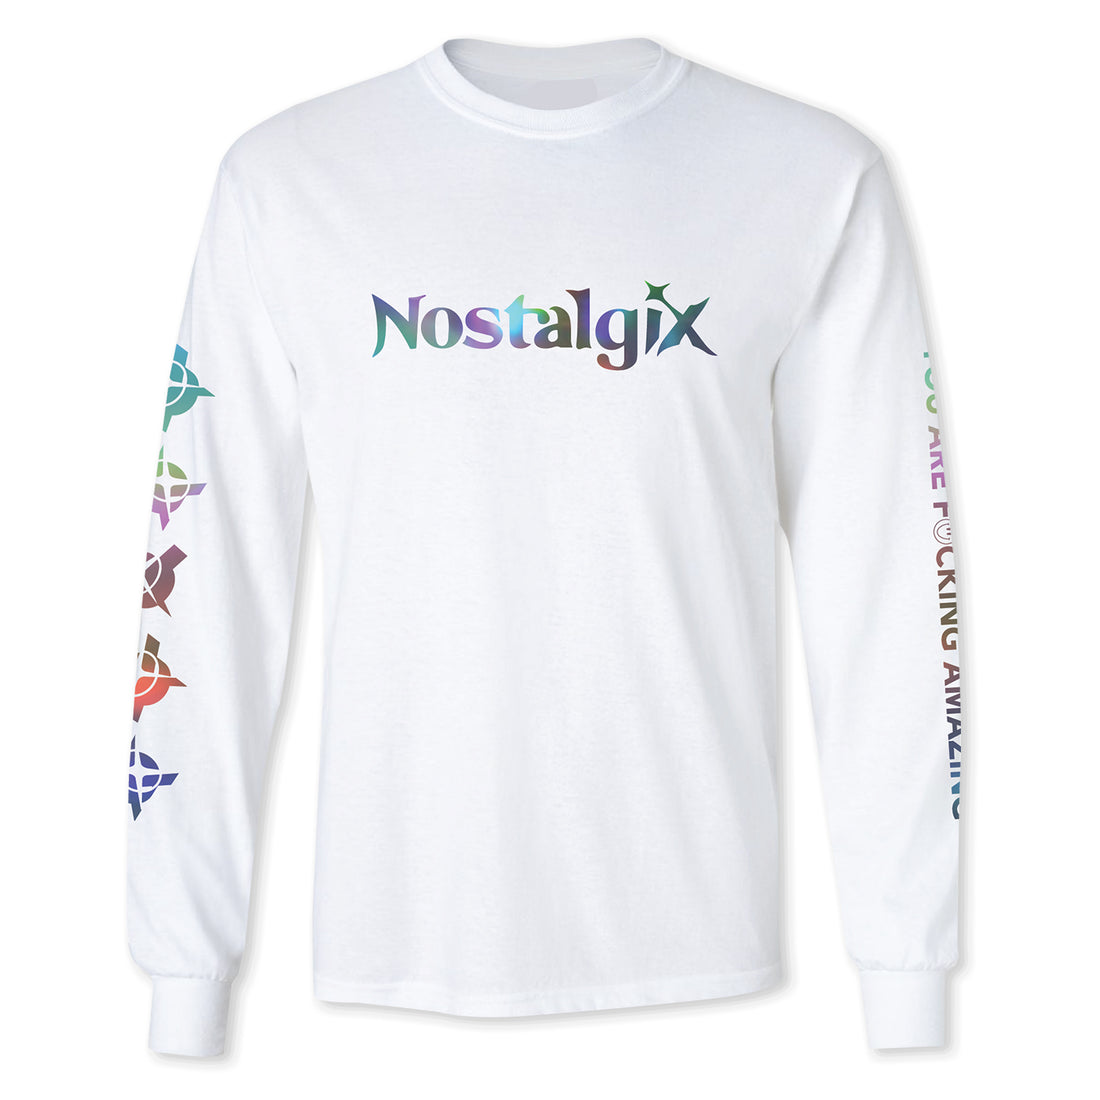 Nostalgix - You Are F*cking Amazing Long Sleeve